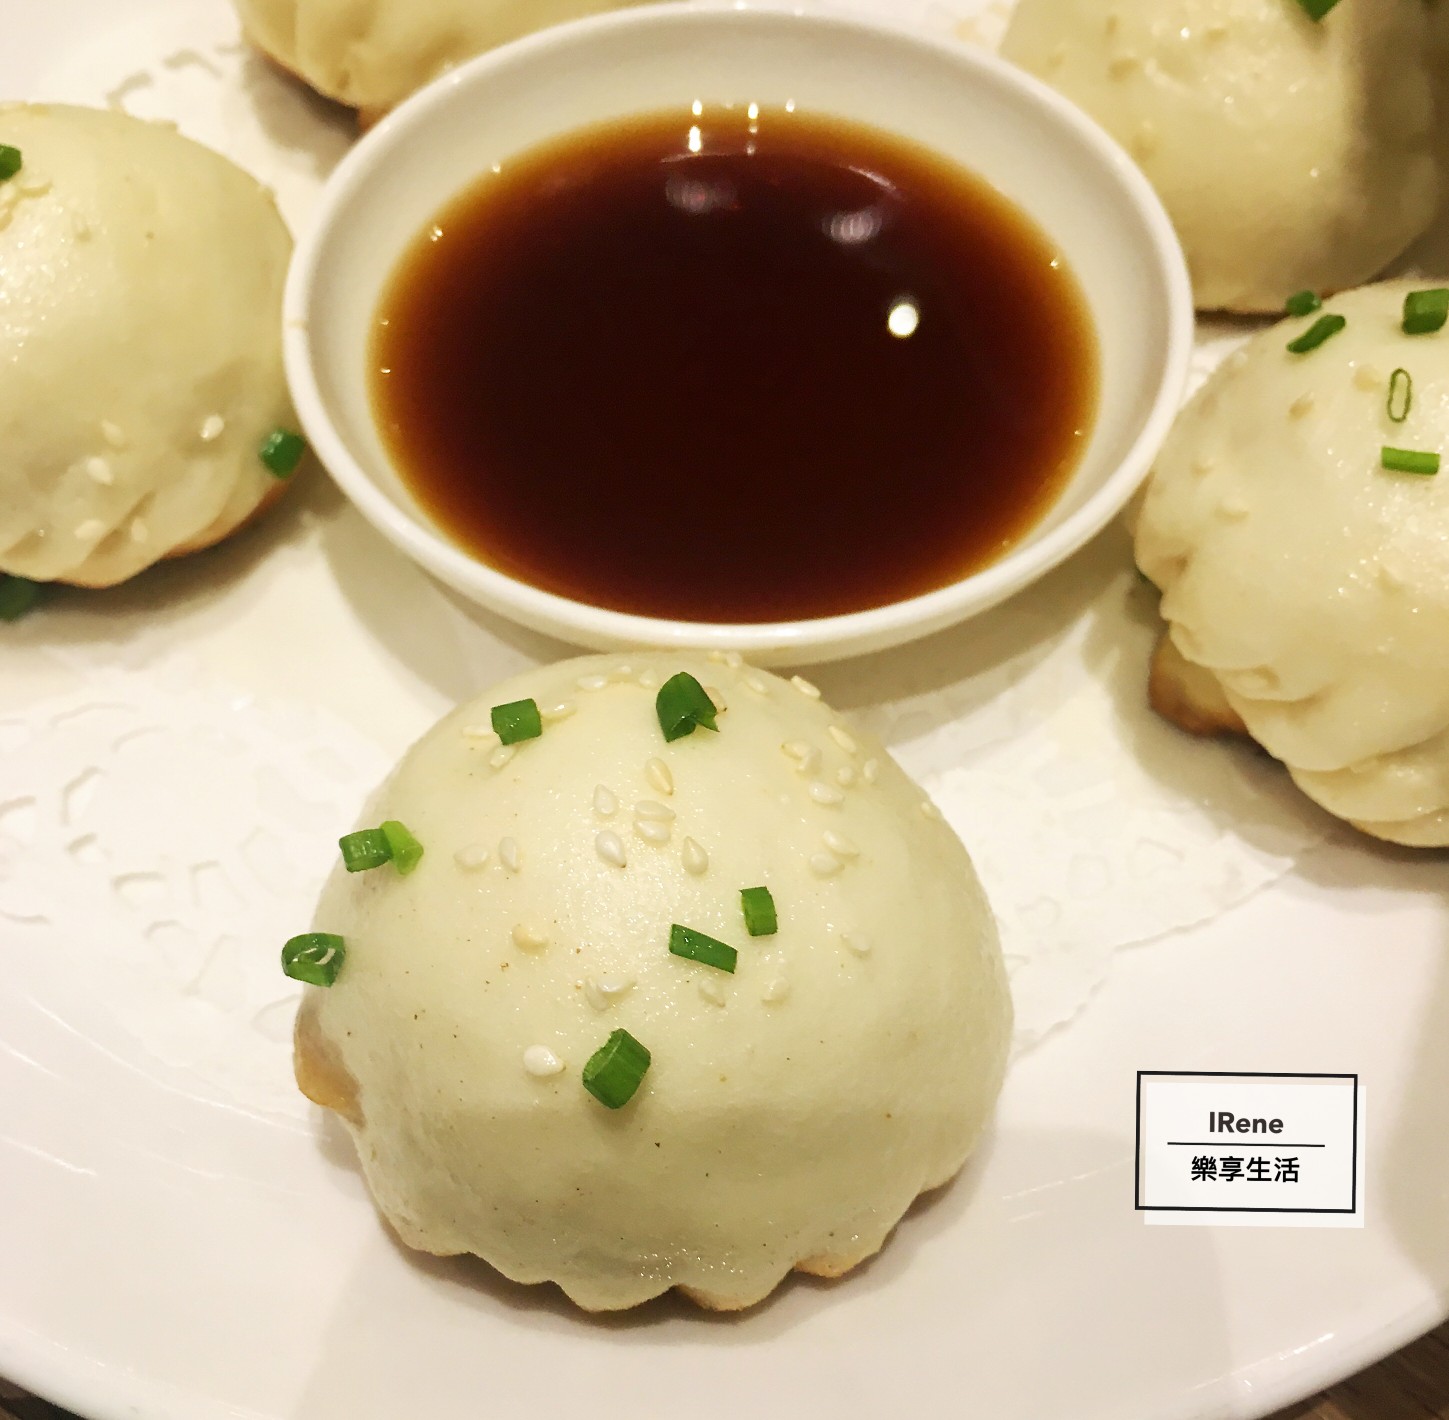 上海小南國餐廳推薦菜-特色生煎